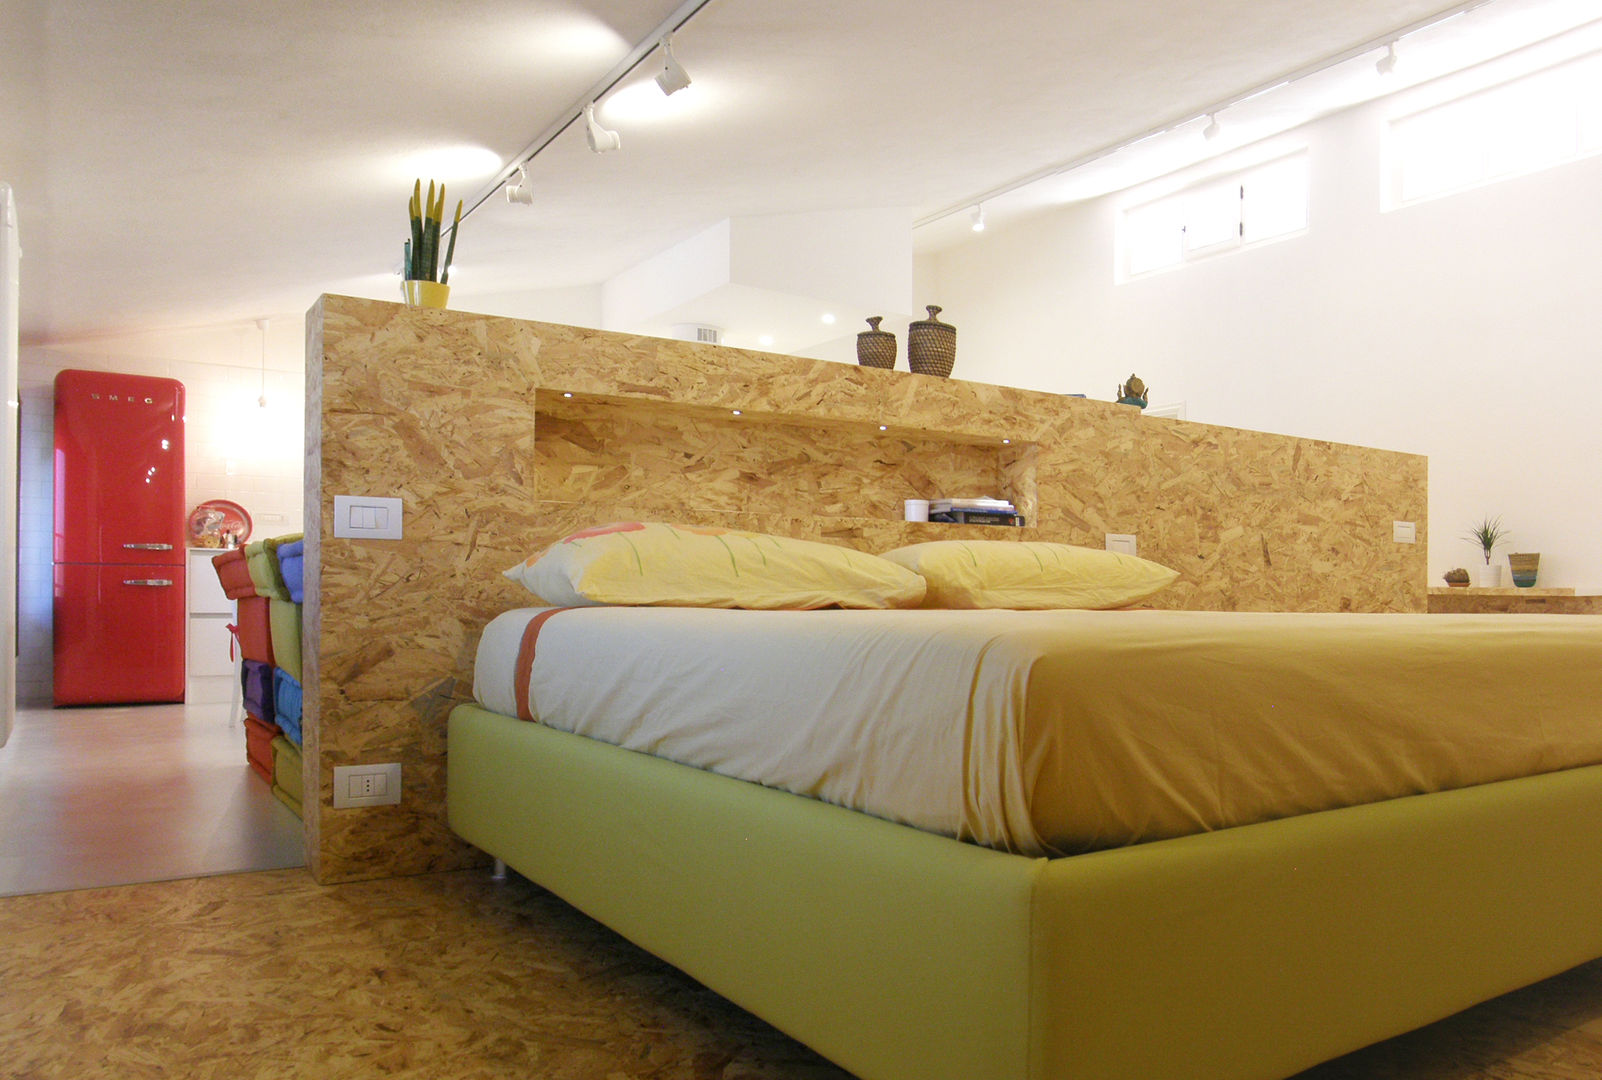 open space:"bianco"_"legno"_"colori", msplus architettura msplus architettura Camera da letto moderna Legno Effetto legno